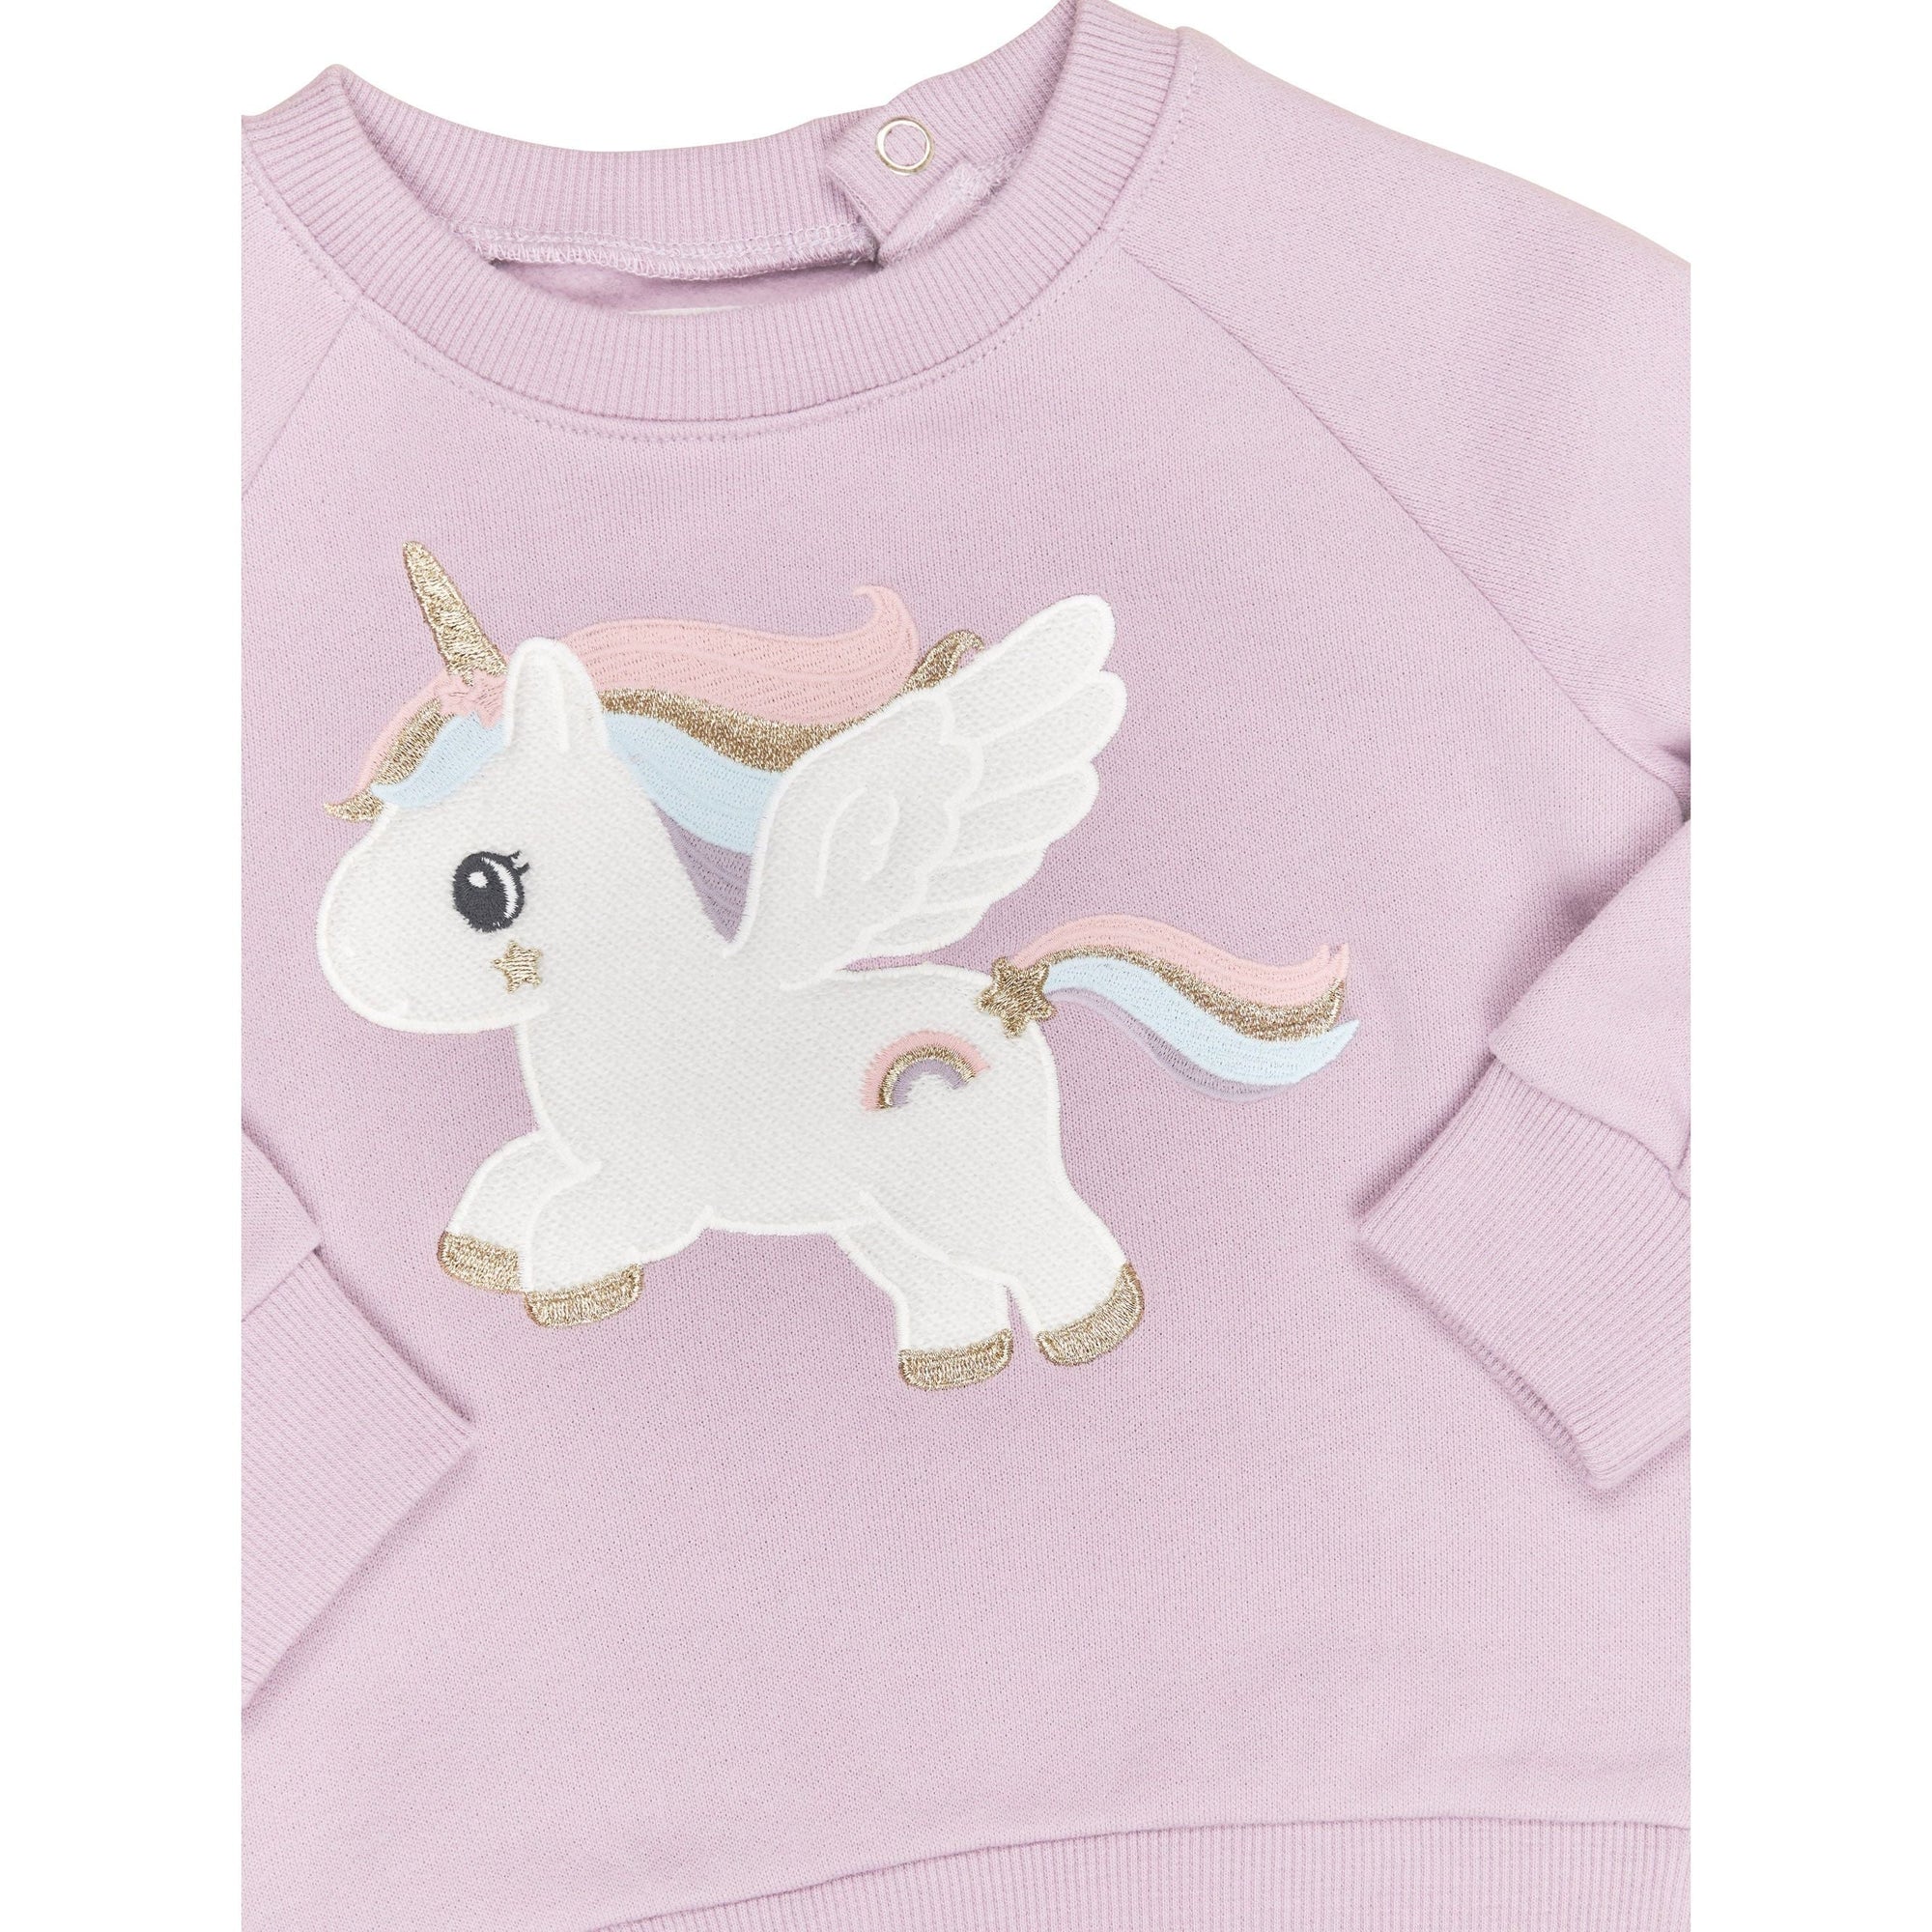 Magical Unicorn Sweatshirt